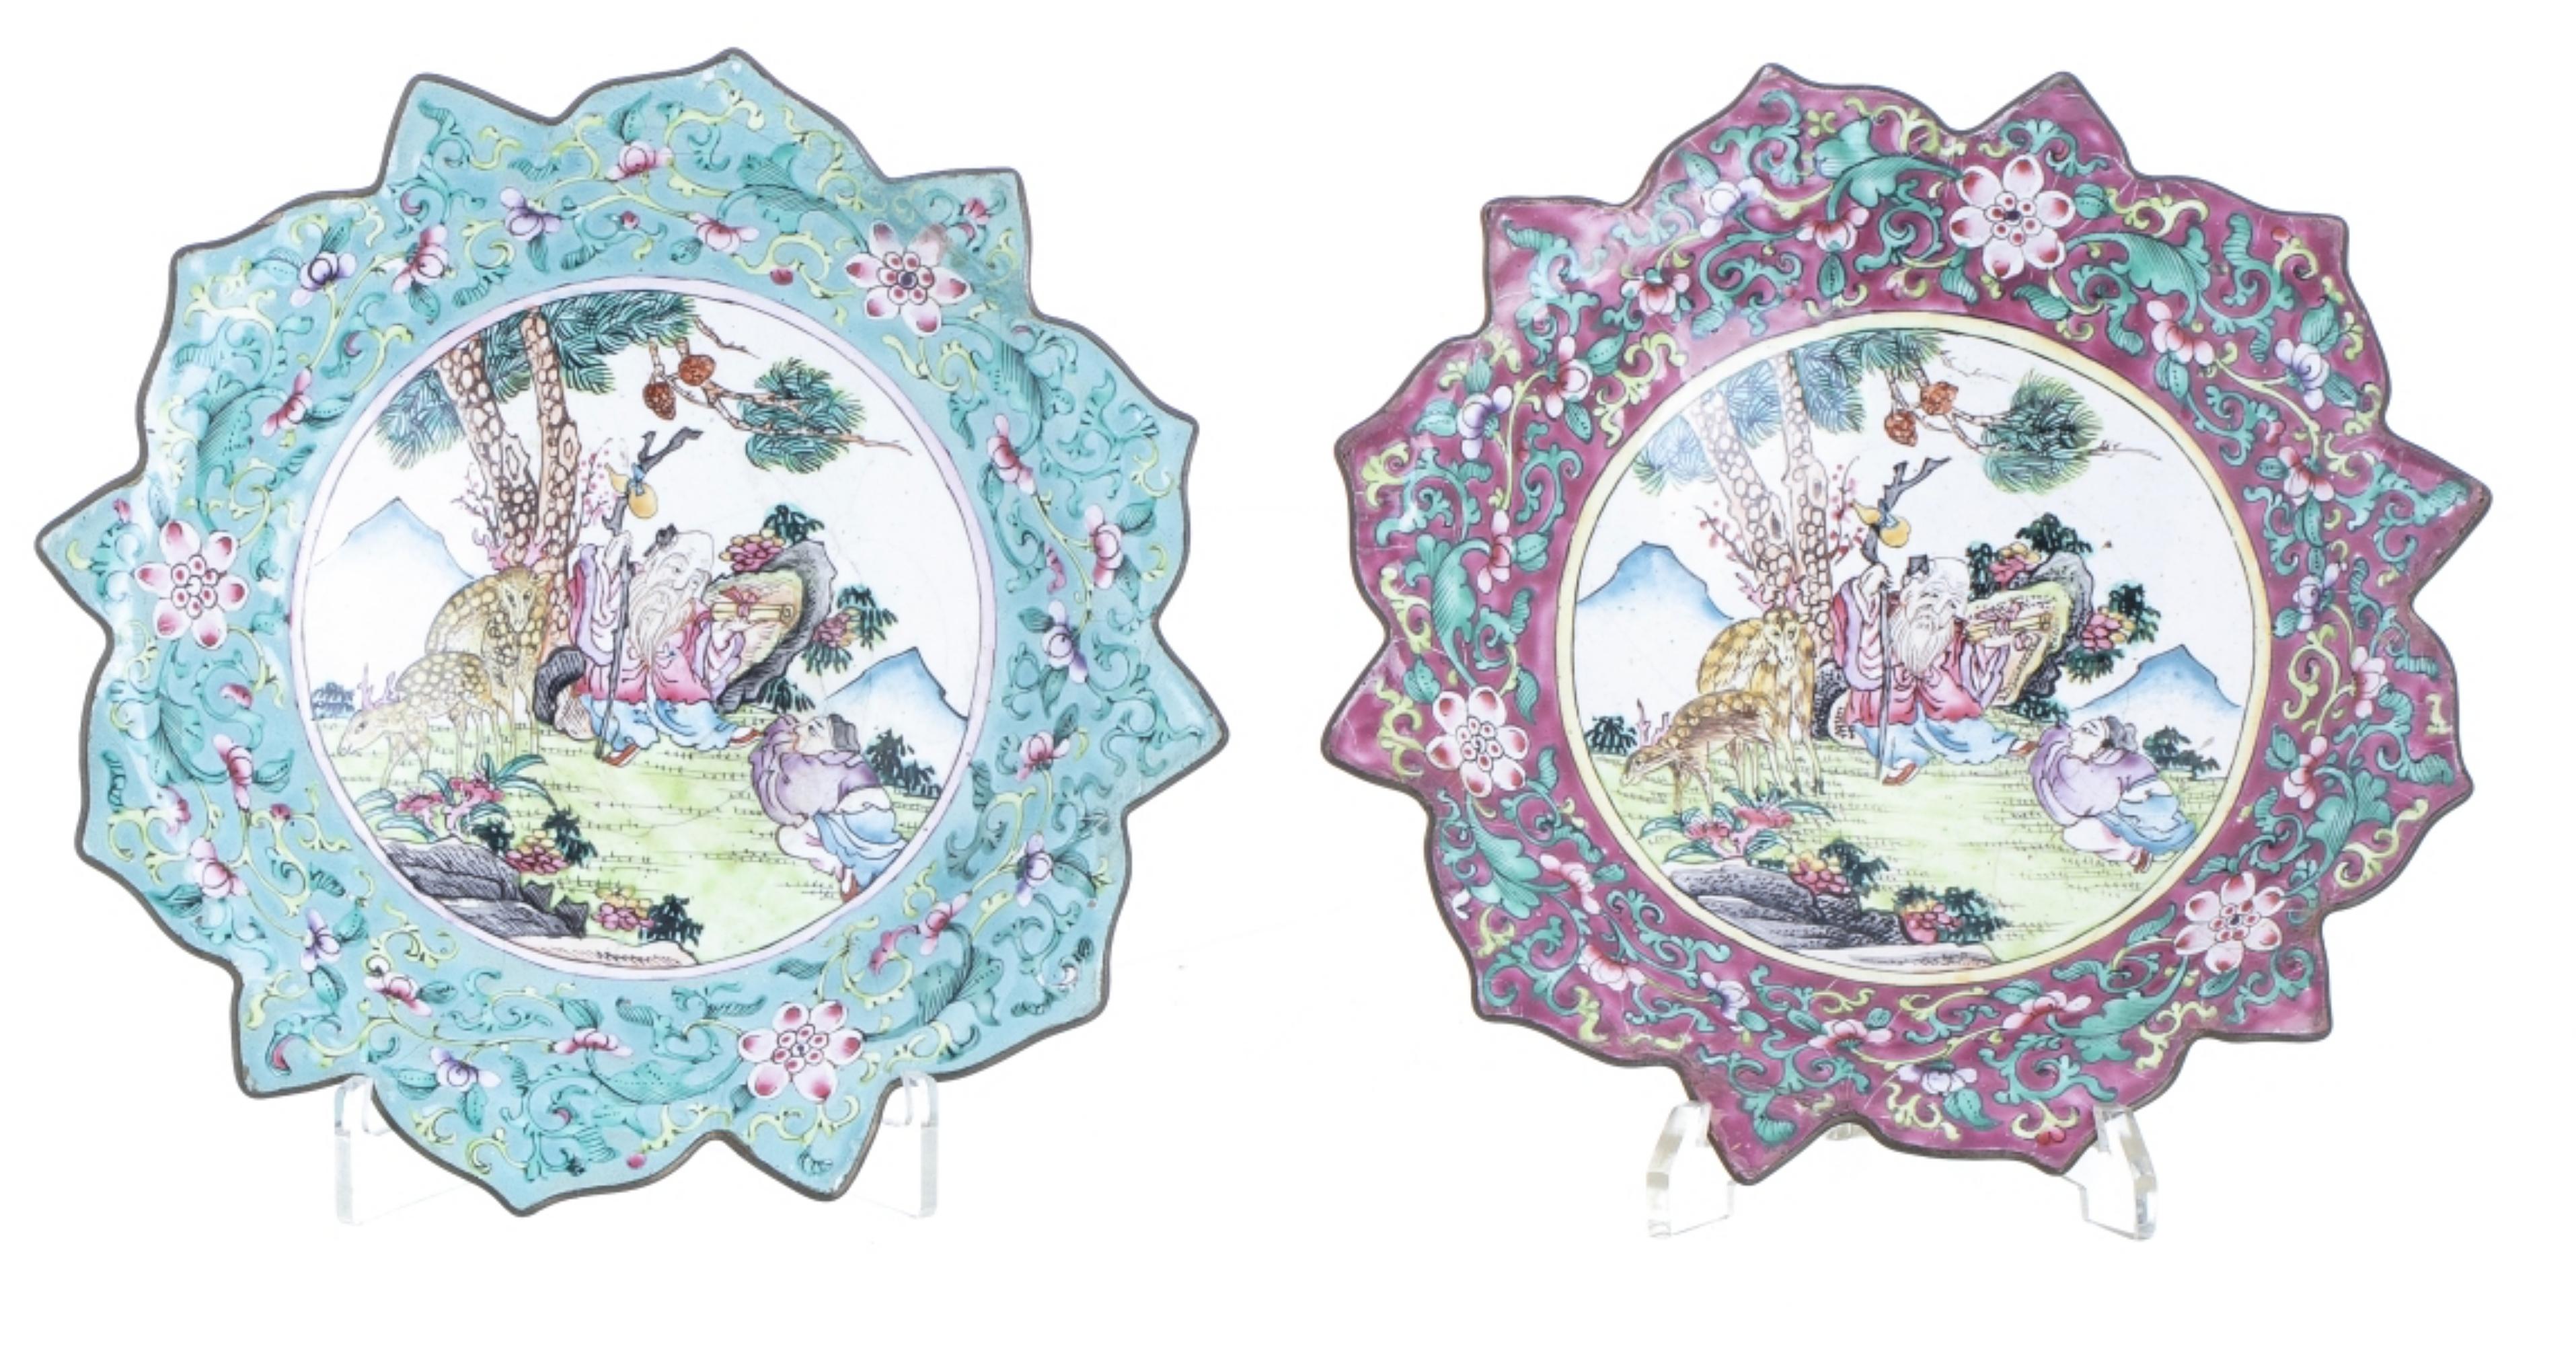 Seltene zwei ausgeschnittene Tafeln.

Chinesisch, 17. Jahrhundert
cloisonné-emailliertes Metall, verziert mit floralen Motiven und einer Reserve in der Mitte mit einer orientalischen Landschaft mit Figuren und Tieren. 
Kleine Restaurierungen.